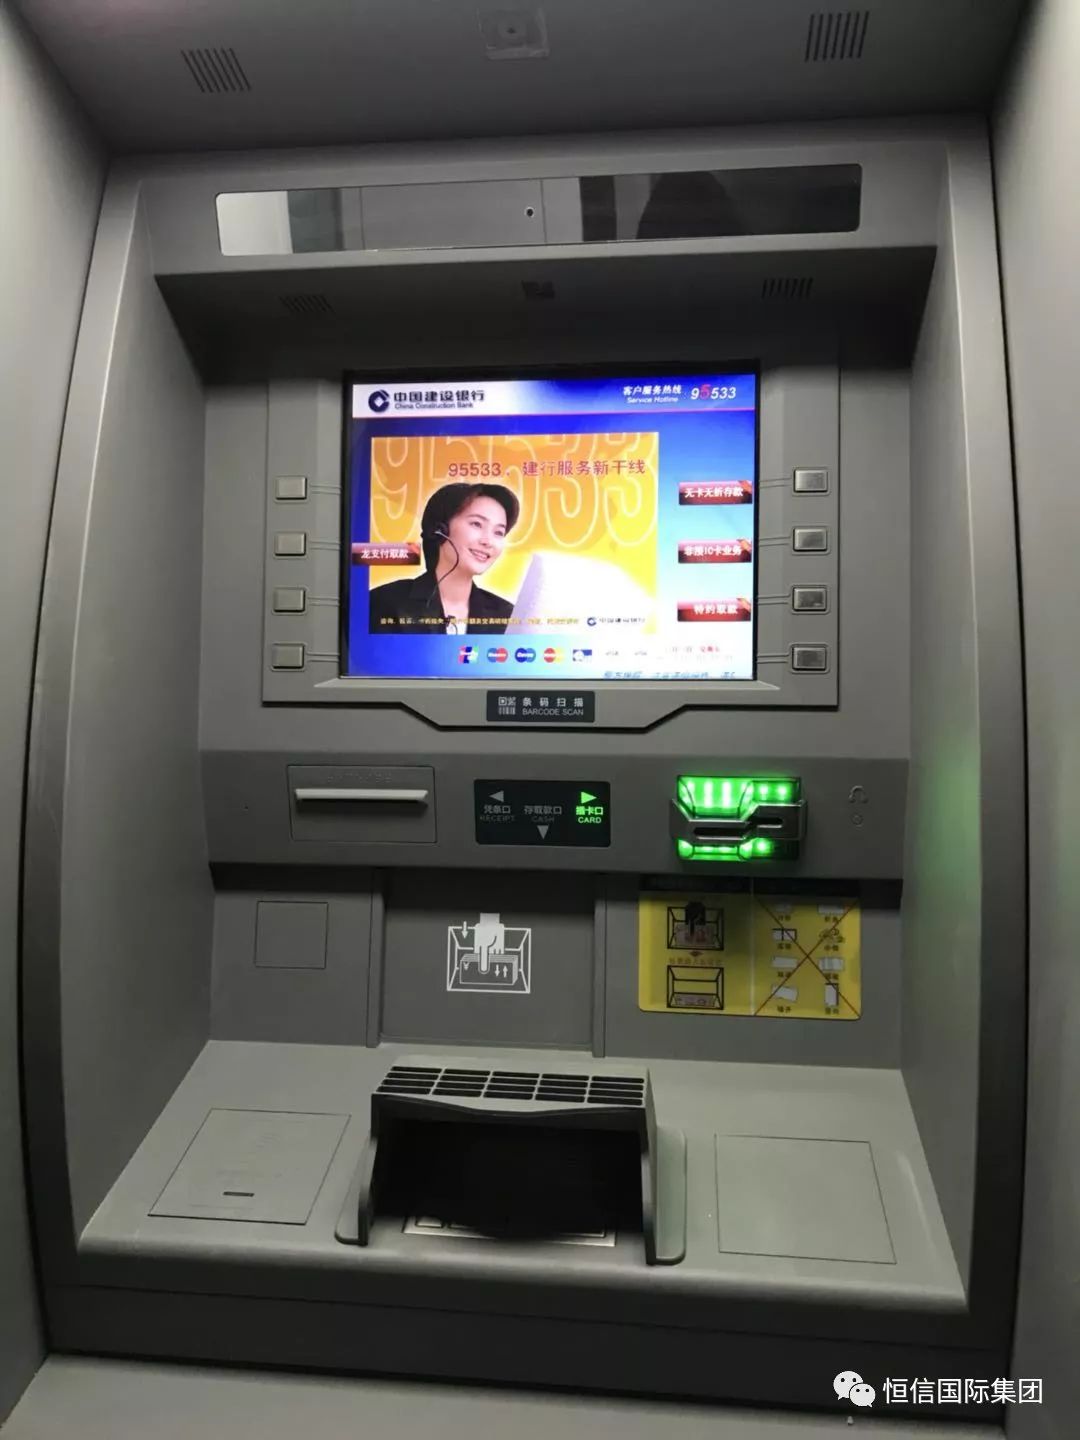 现代自动取款机ATM取款机su模型下载_ID12029778_sketchup模型下载-欧模网